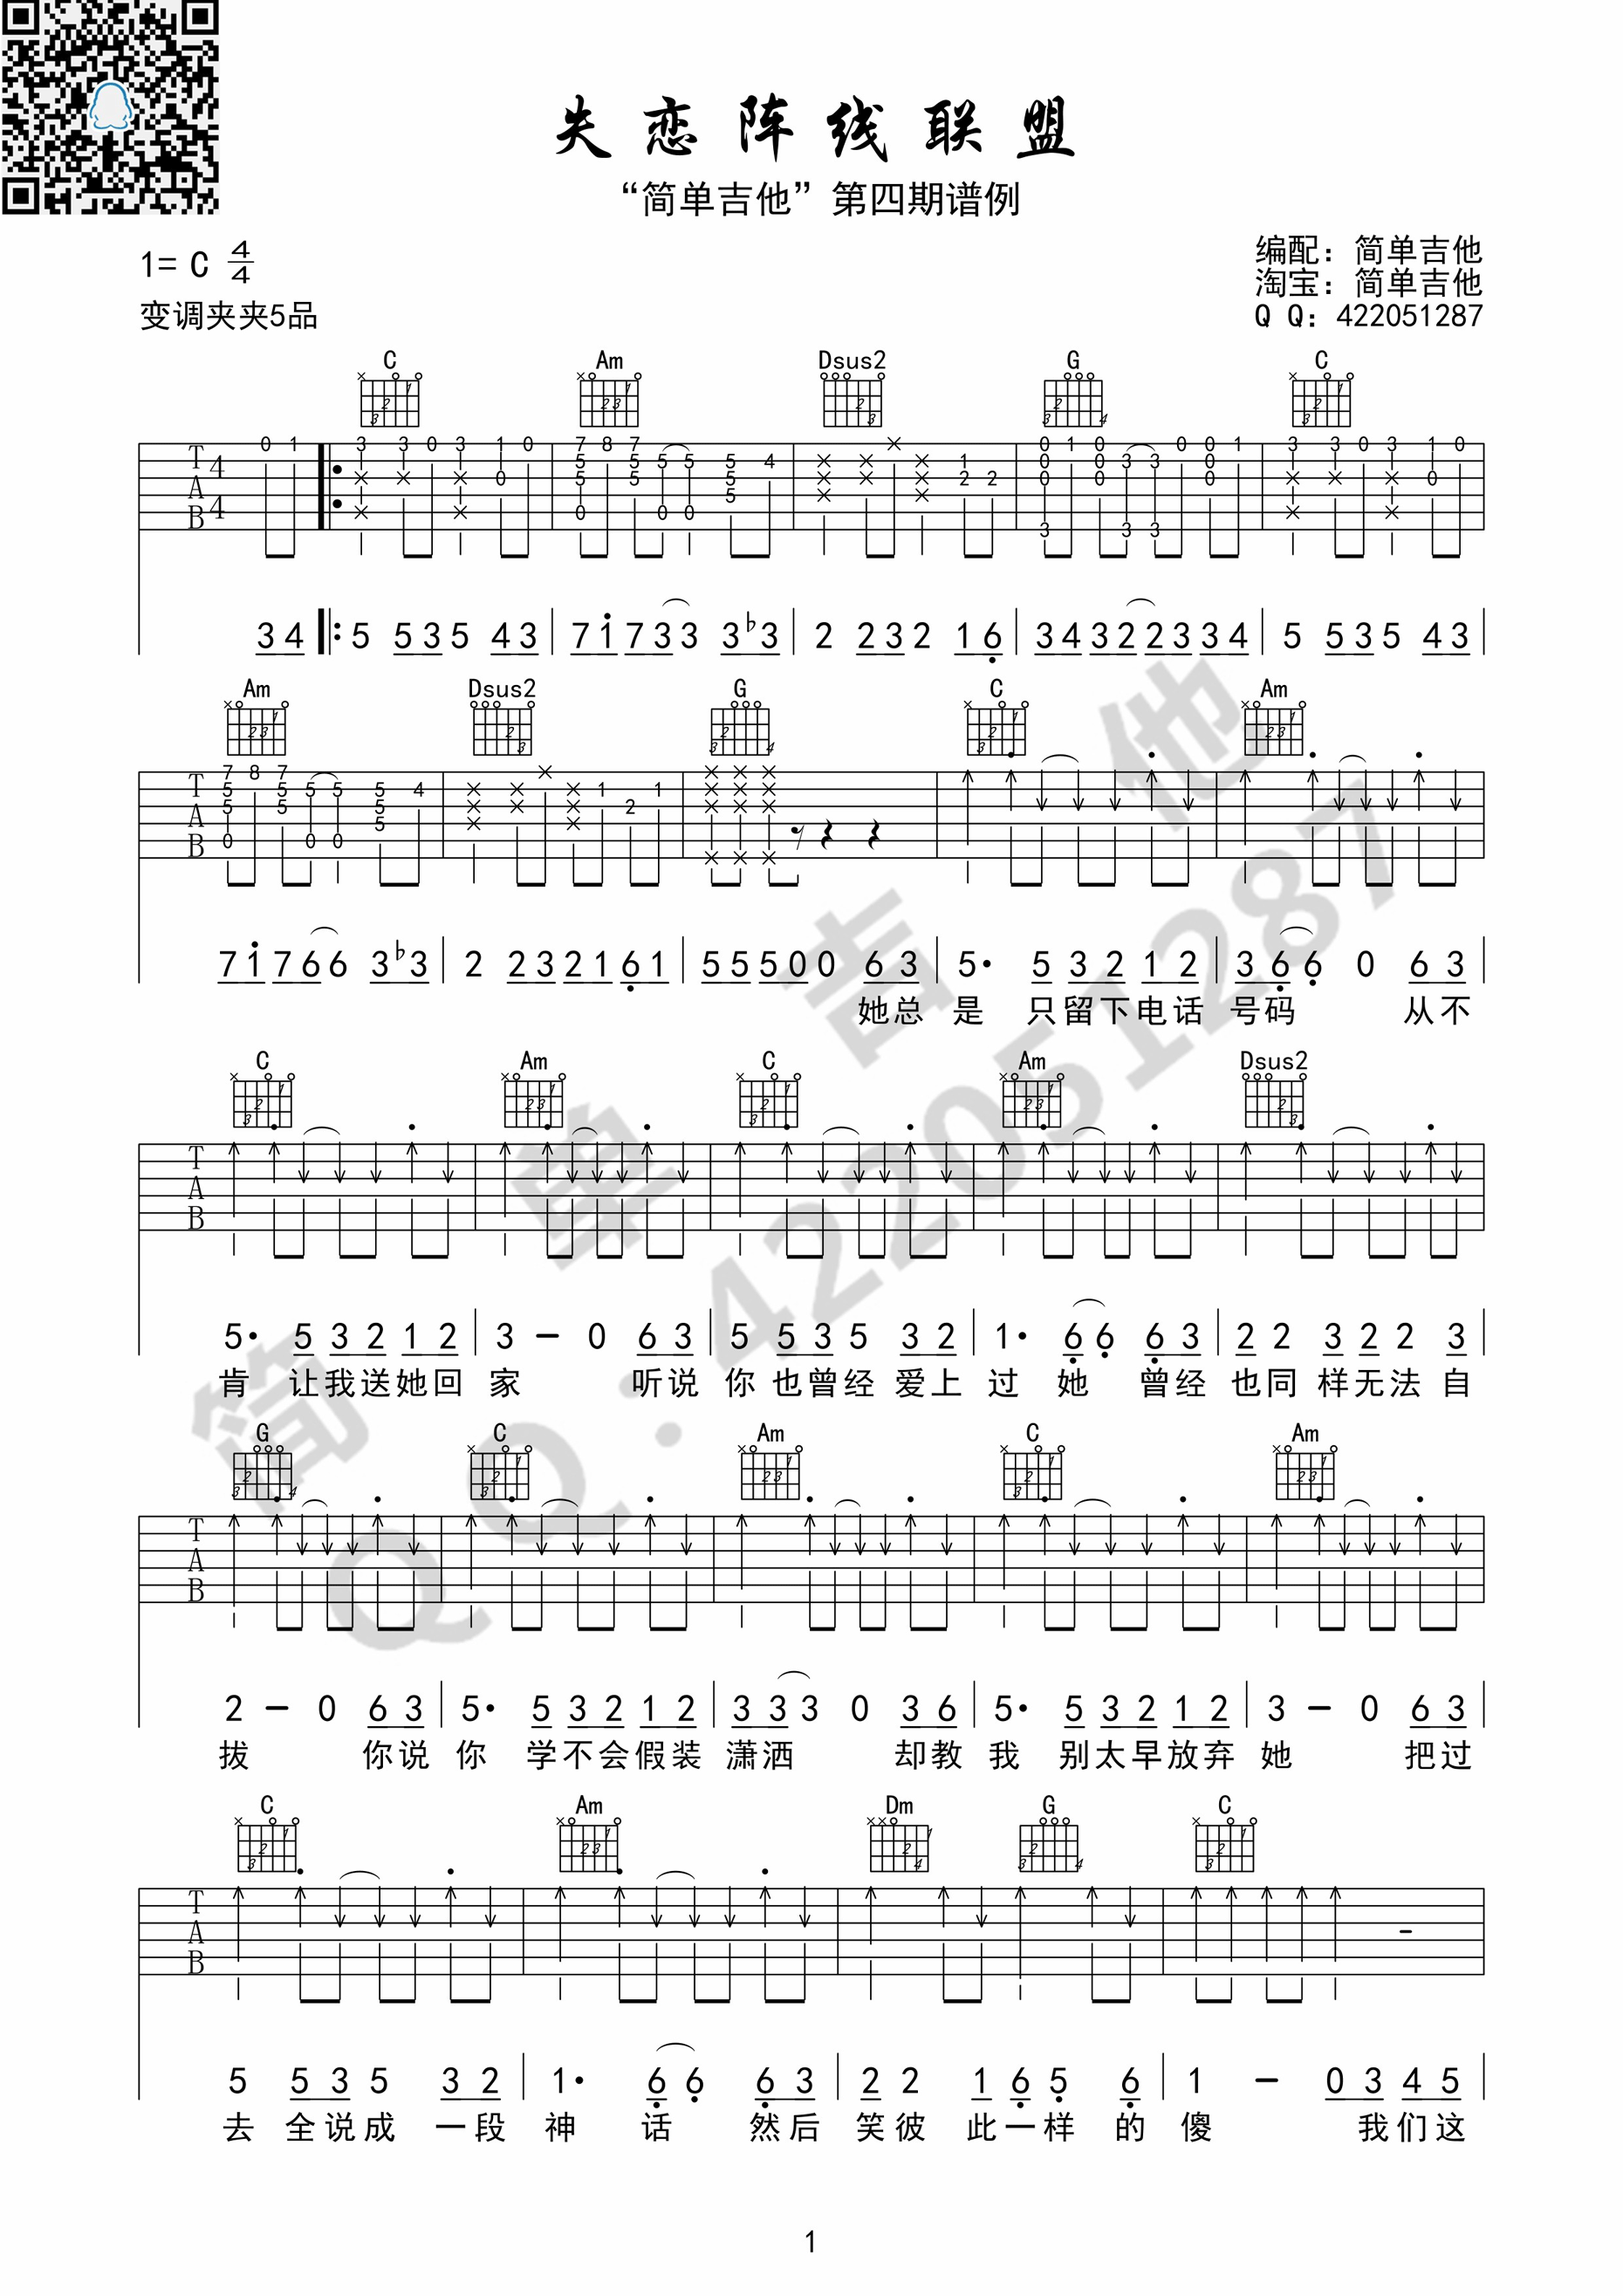 草蜢《失恋阵线联盟》吉他谱-Guitar Music Score